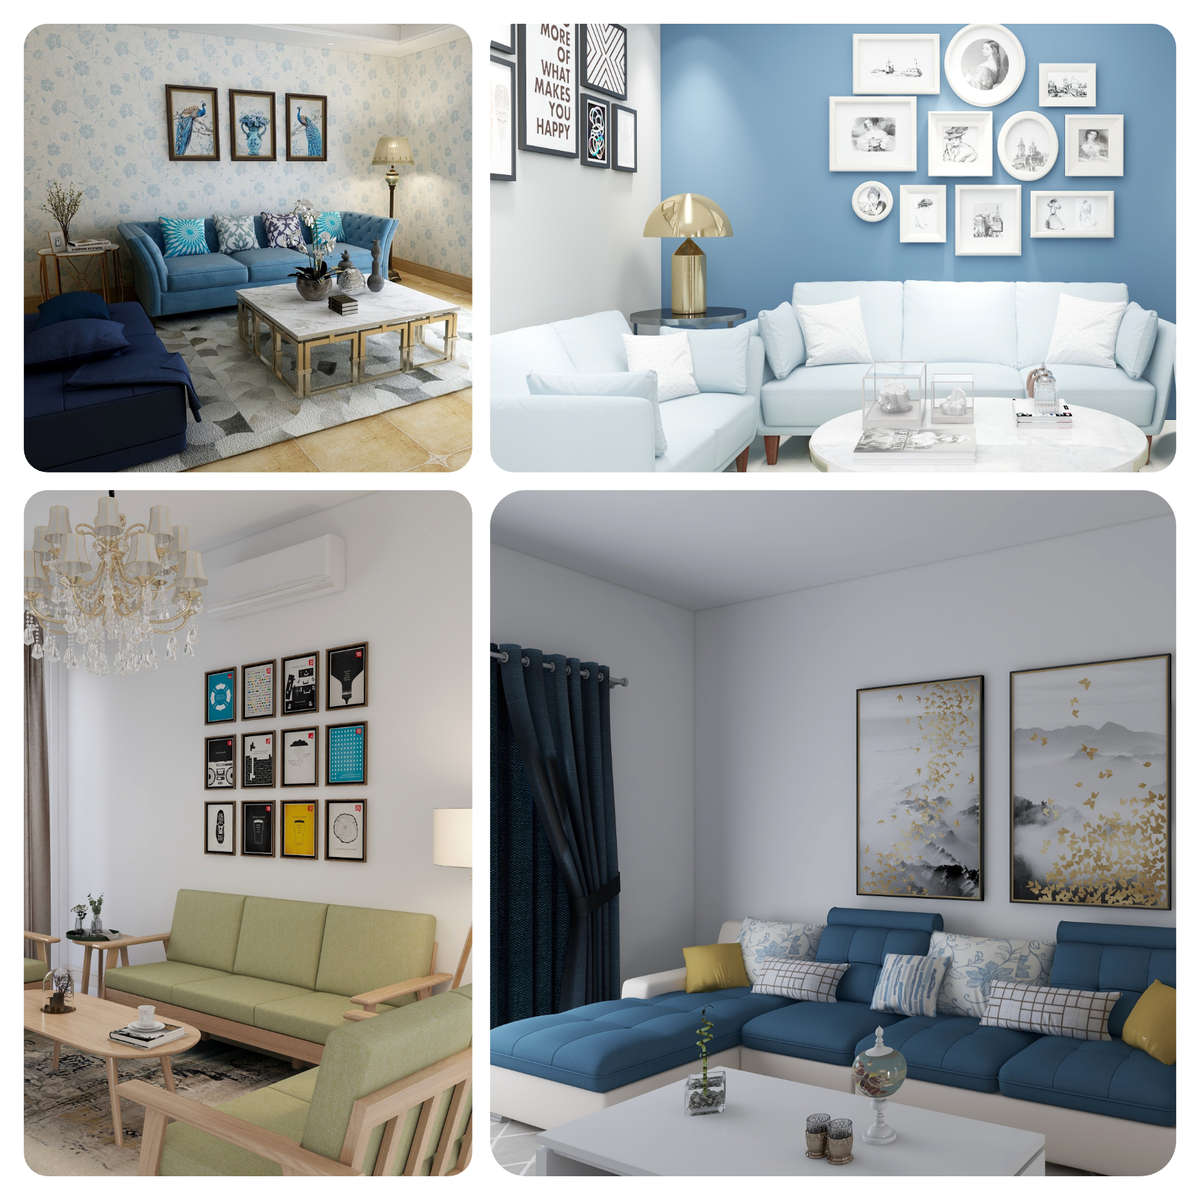 #livingroomdesign 
#decor 
#design 
#living 
#3d 
#3drender 
#Render 
#Style 
#roomsetup 
#interiordesign
#interior 
#interiordecor 
#livingroom
#ideas